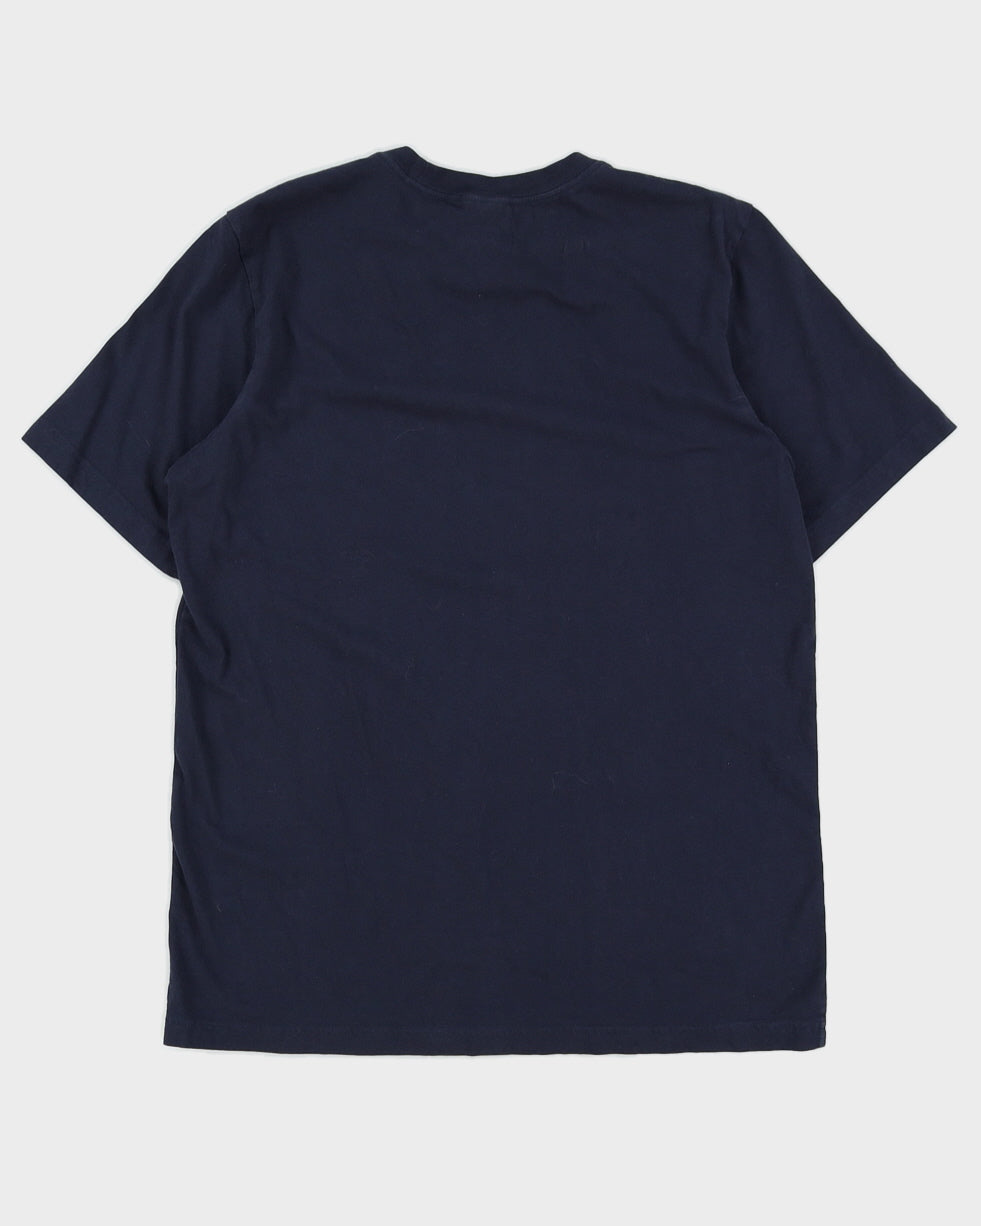 Mens Navy Adidas T-Shirts